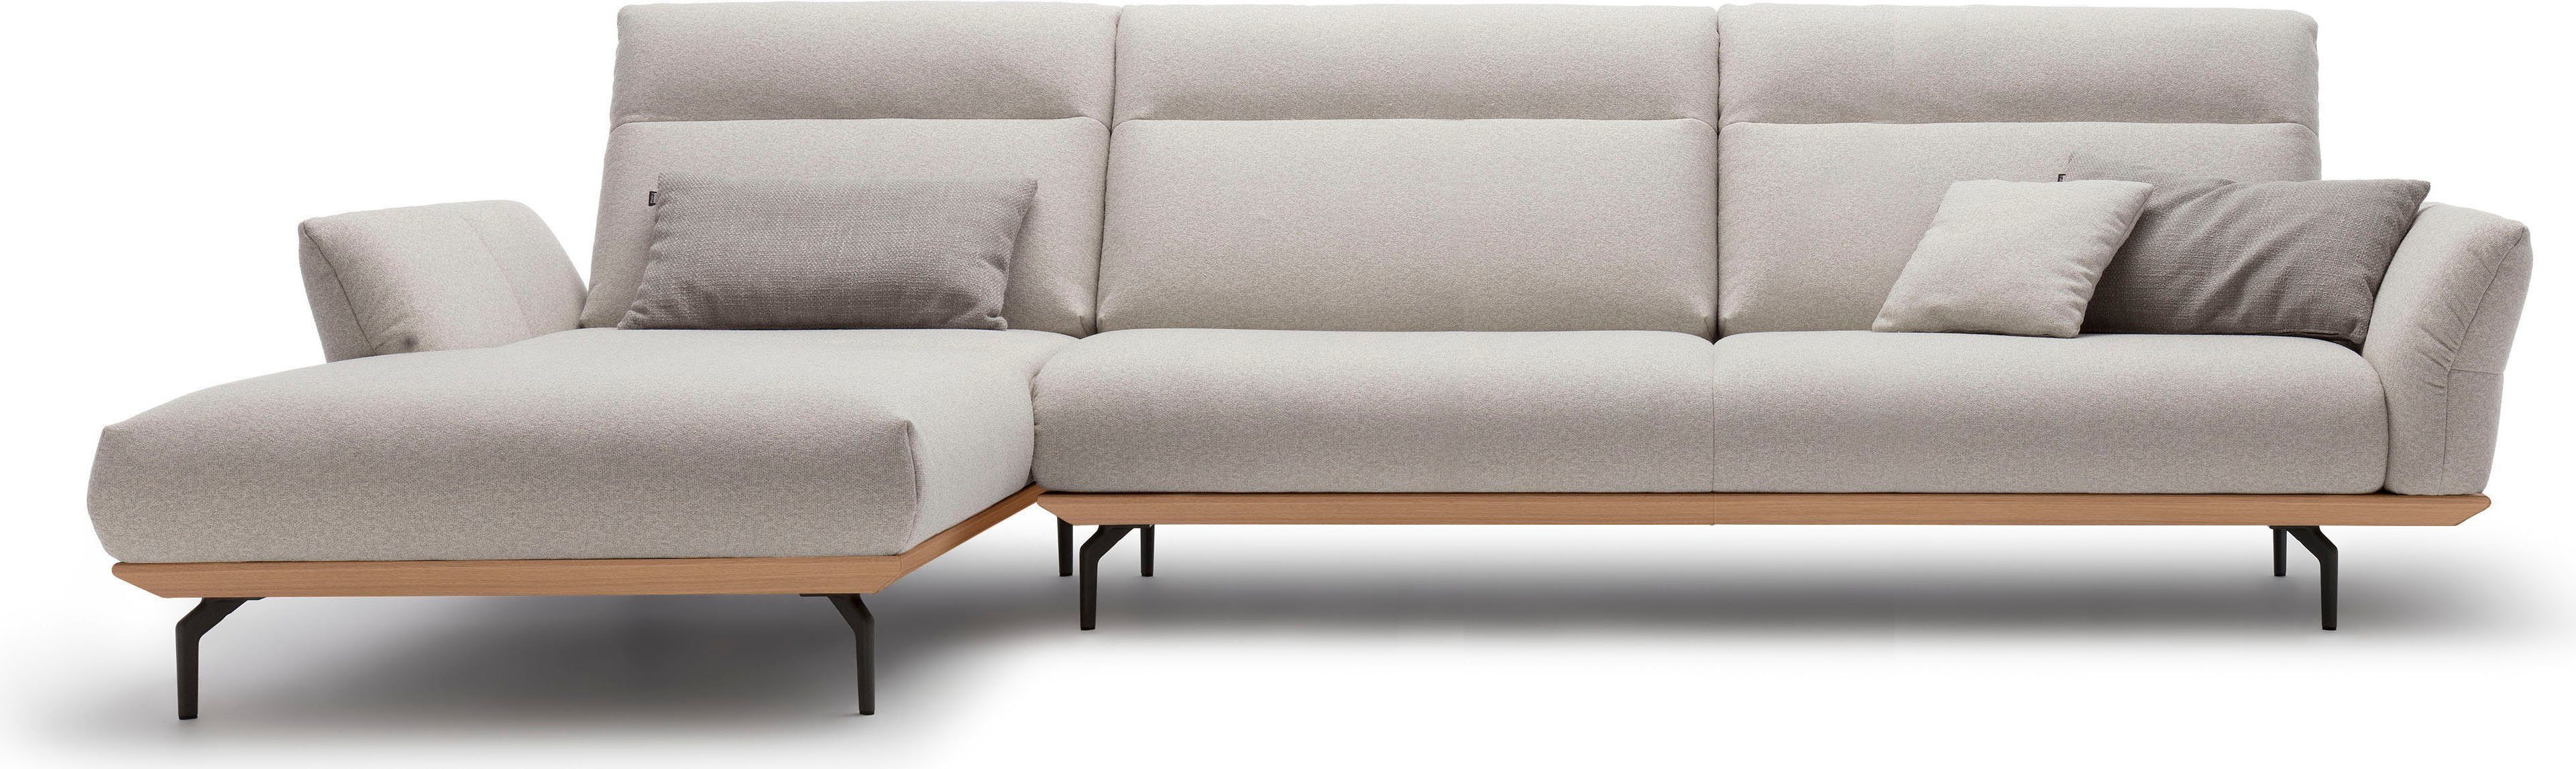 huelsta sofa hoekbank hs.460 sokkel in eiken, onderstel in umbra grijs, breedte 338 cm grijs